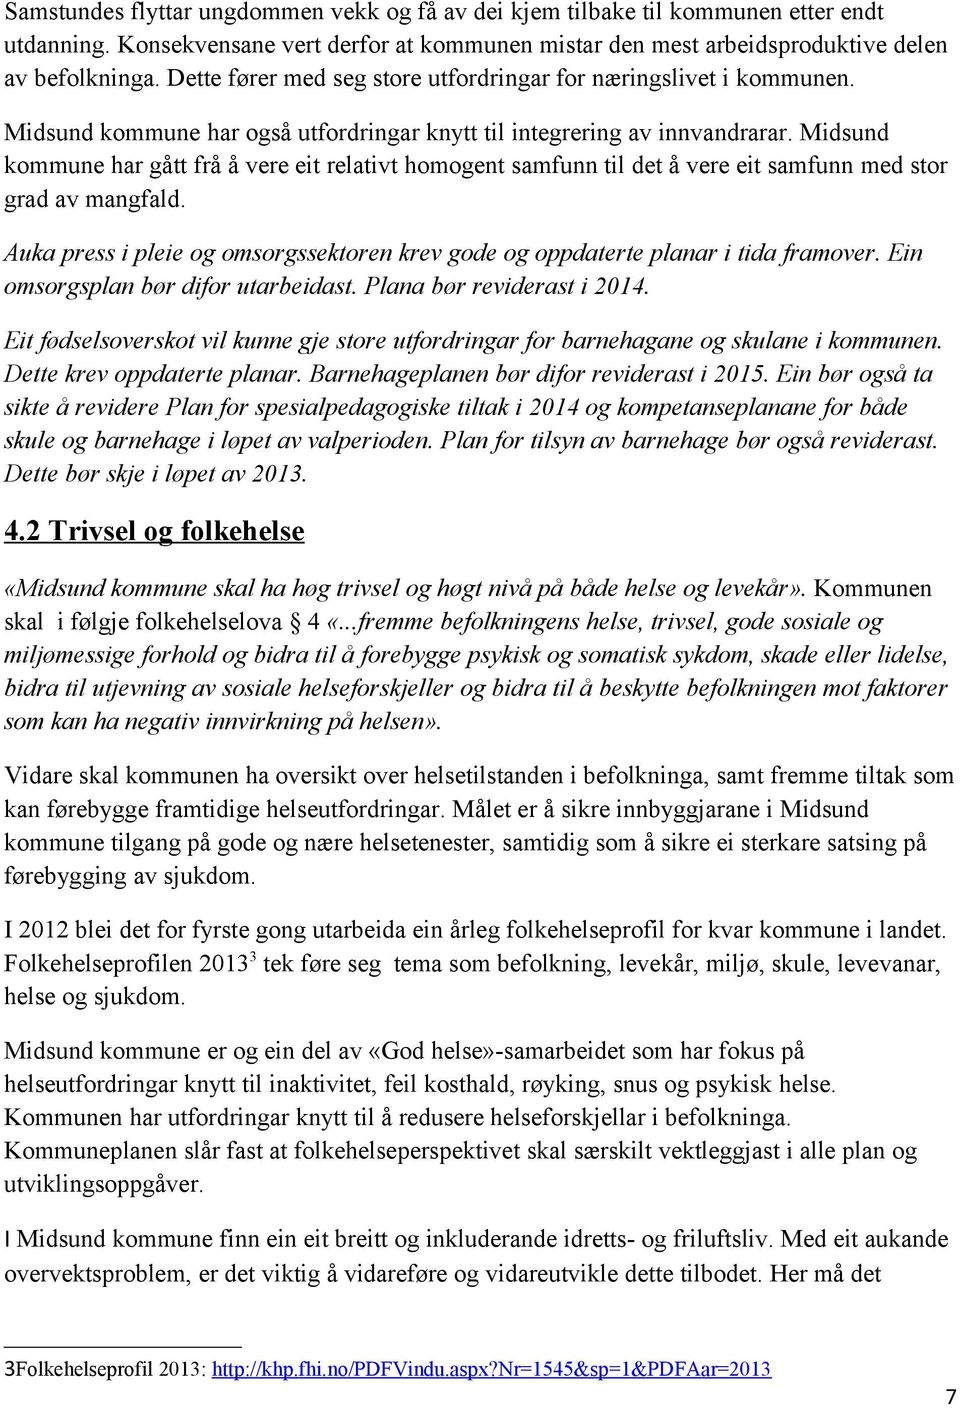 Midsund kommune har gått frå å vere eit relativt homogent samfunn til det å vere eit samfunn med stor grad av mangfald.